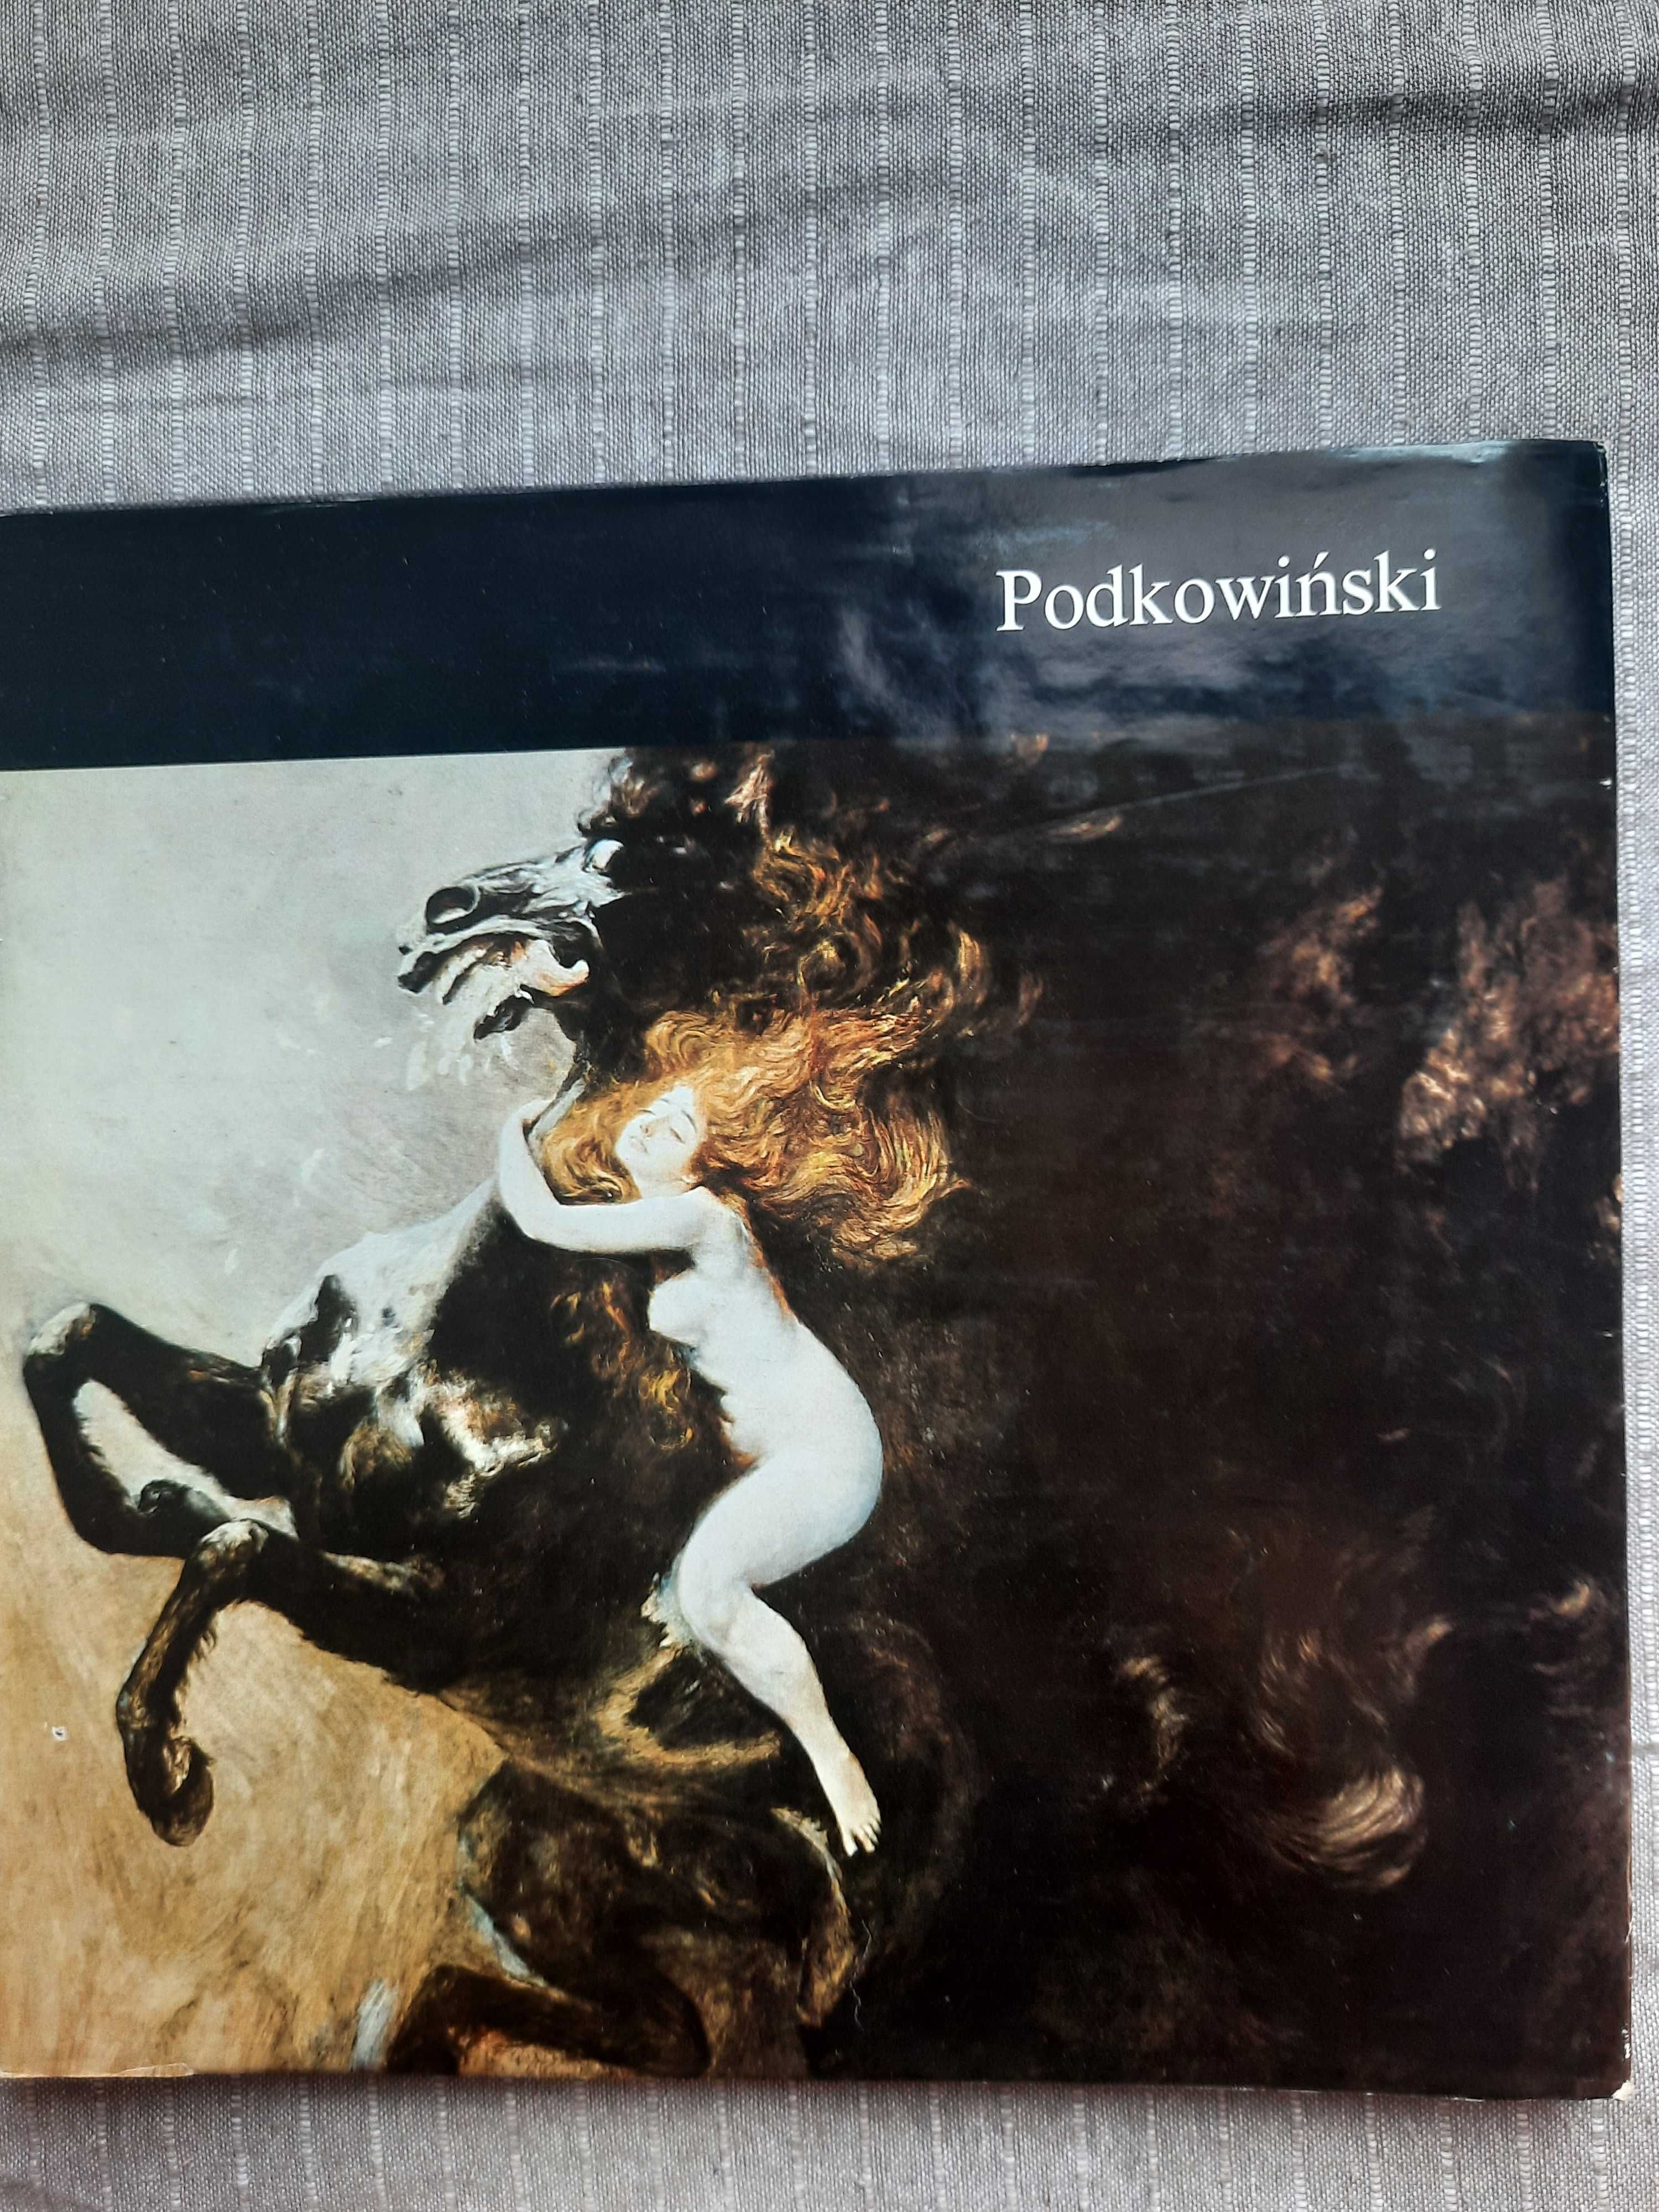 Książka Władysław Podkowiński